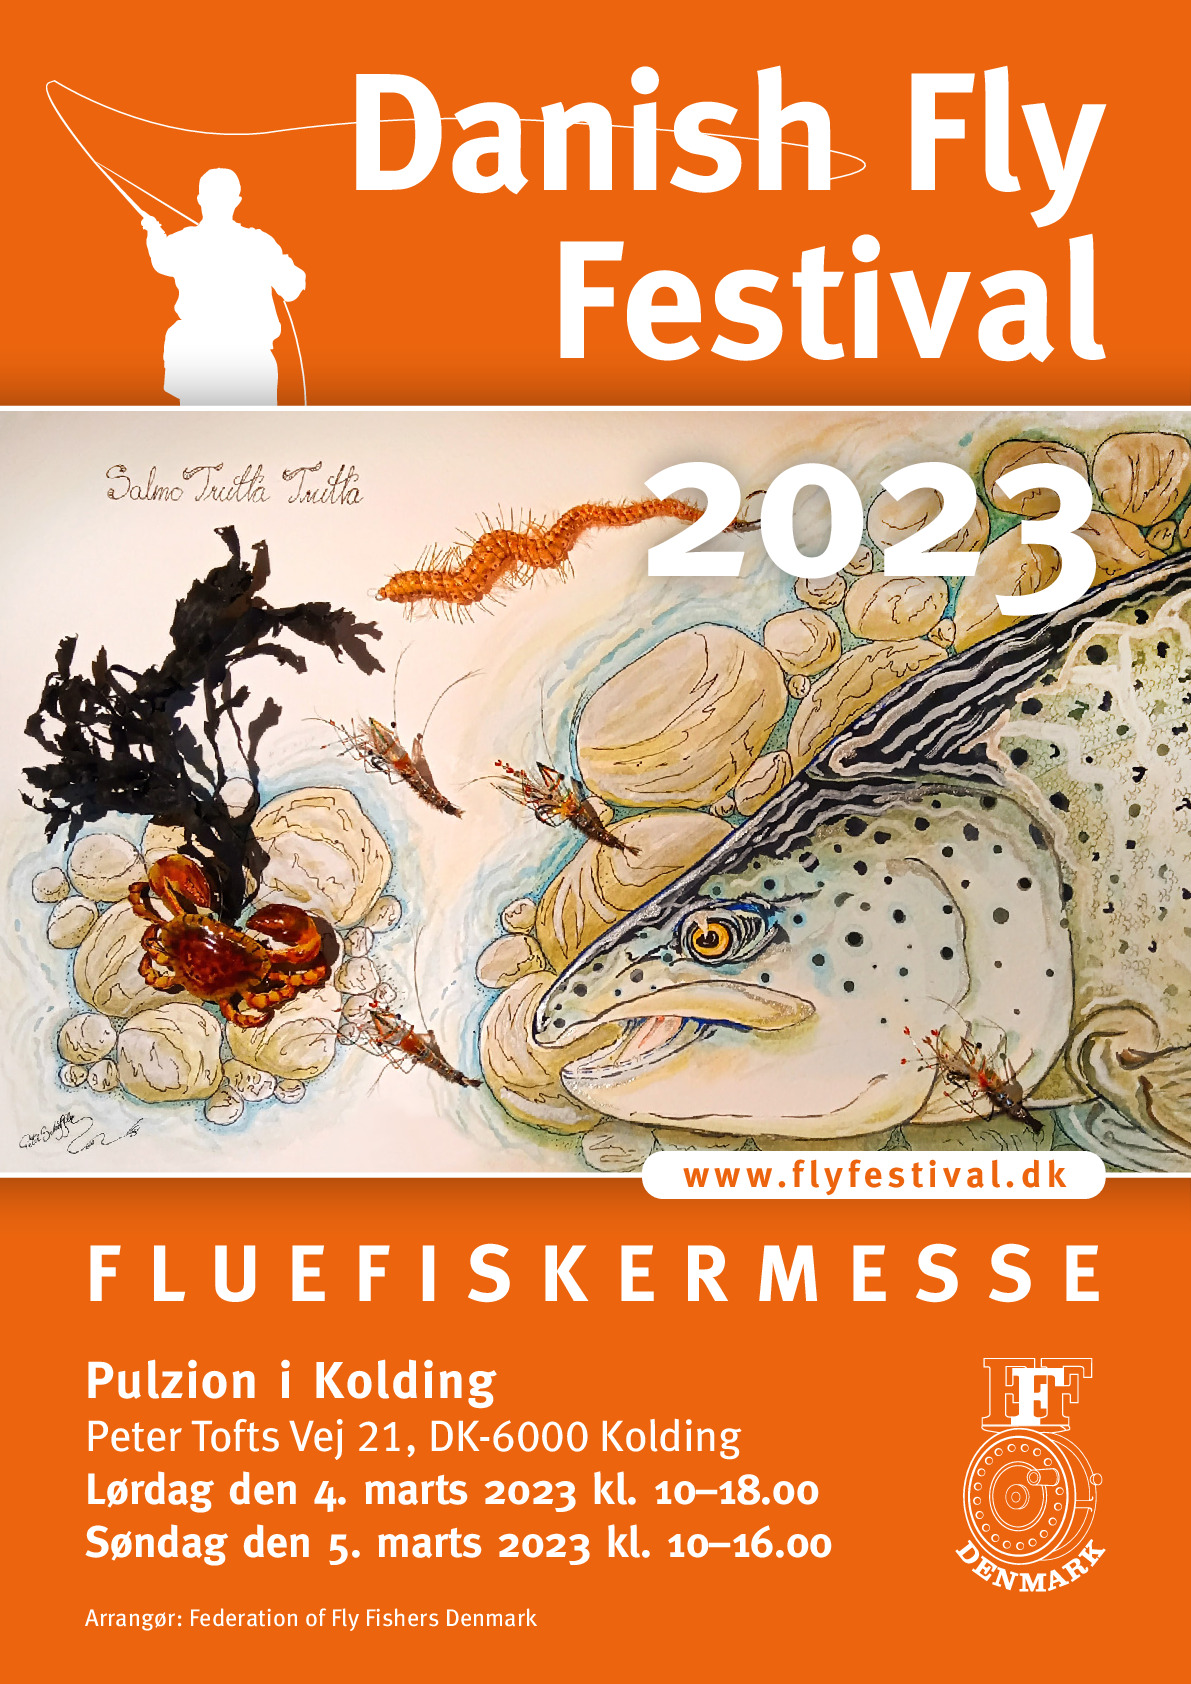 Plakater fra 1993 til dag - FFFD - Federation of Fly Fishers Denmark